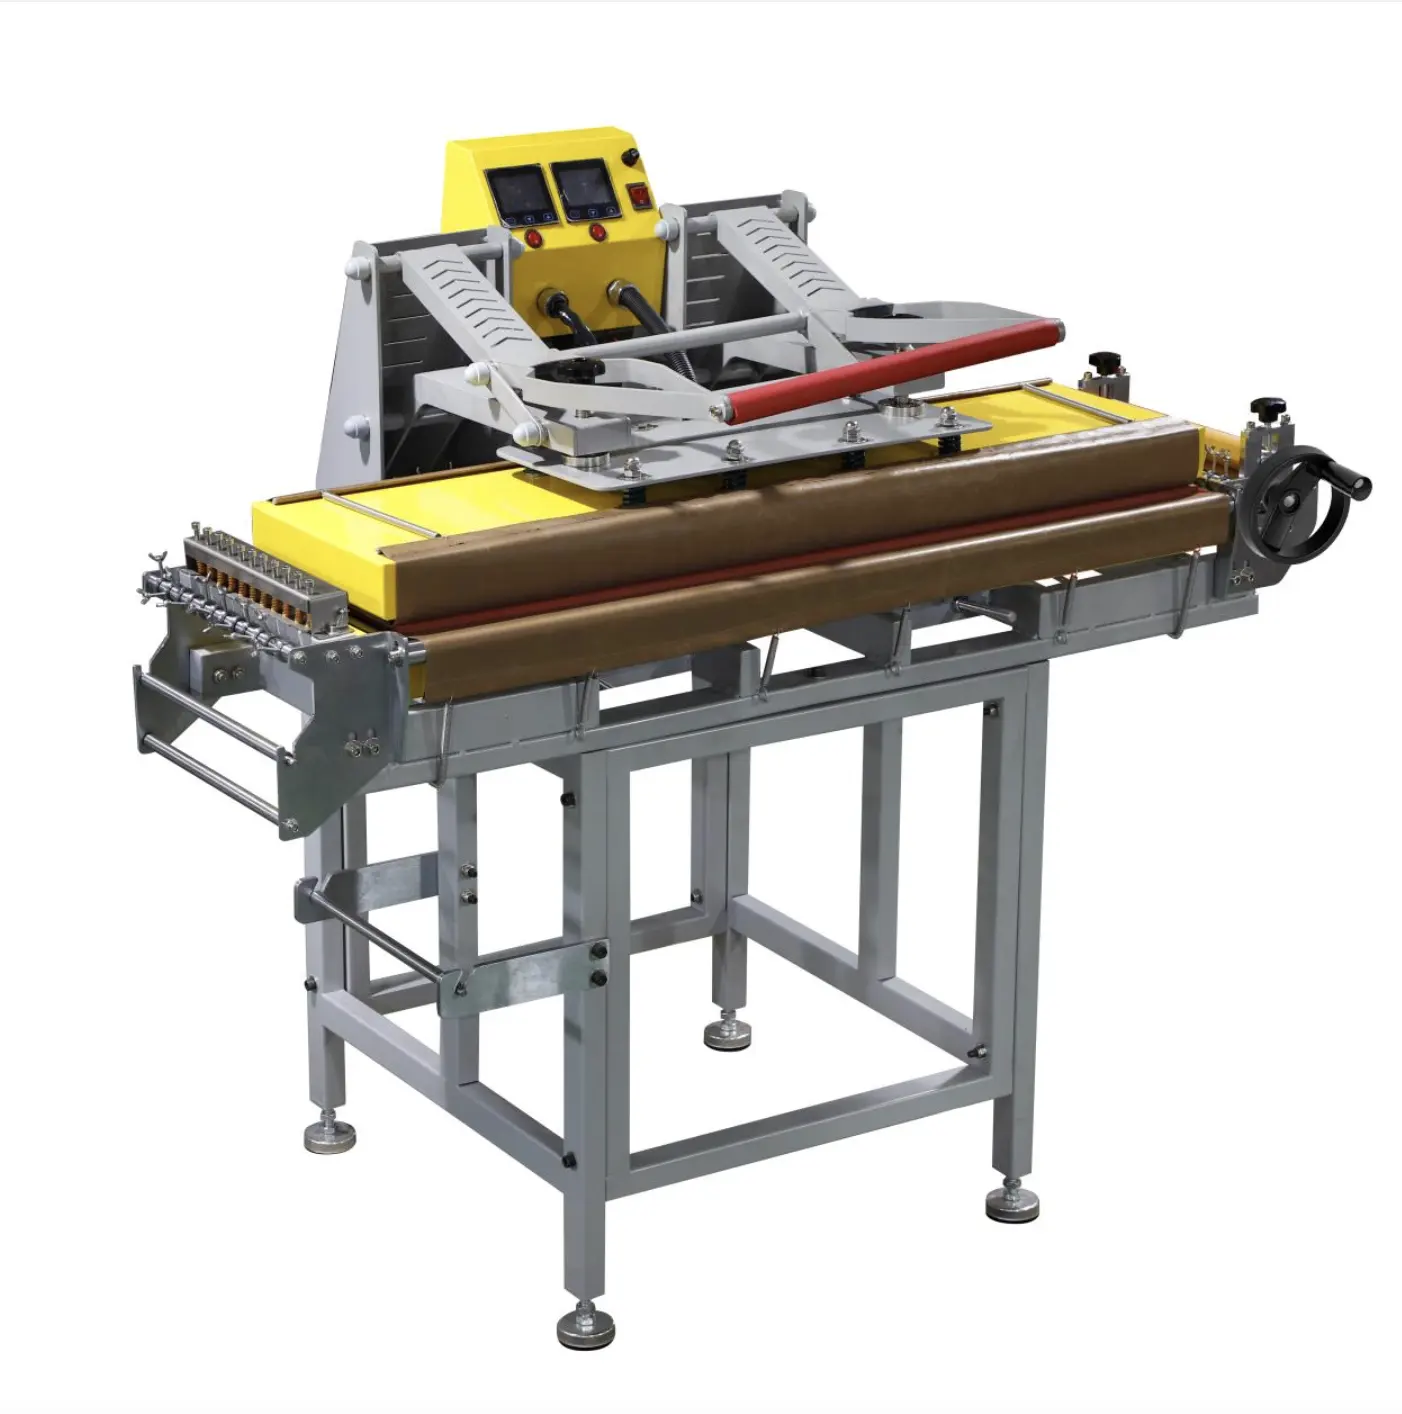 Verkaufen Sie gut hochwertige Lanyard-Heiß press maschinen Lanyard-Heiß press maschinen 100x25 cm